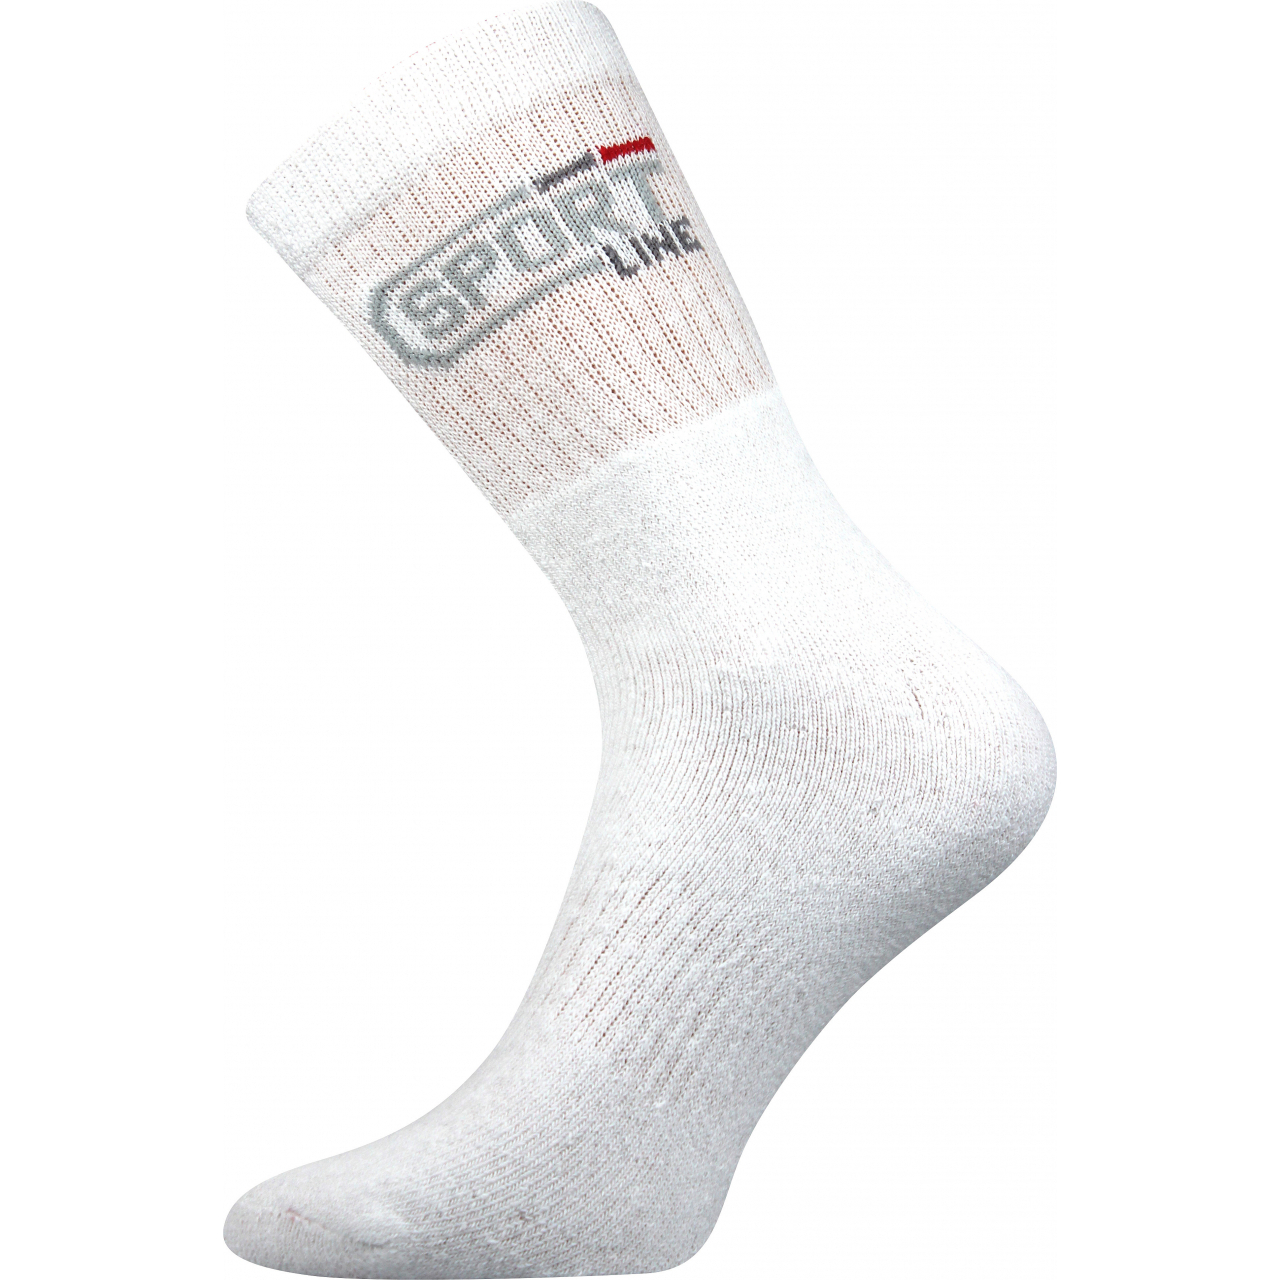 Ponožky unisex klasické Boma Spot - bílé, 39-42